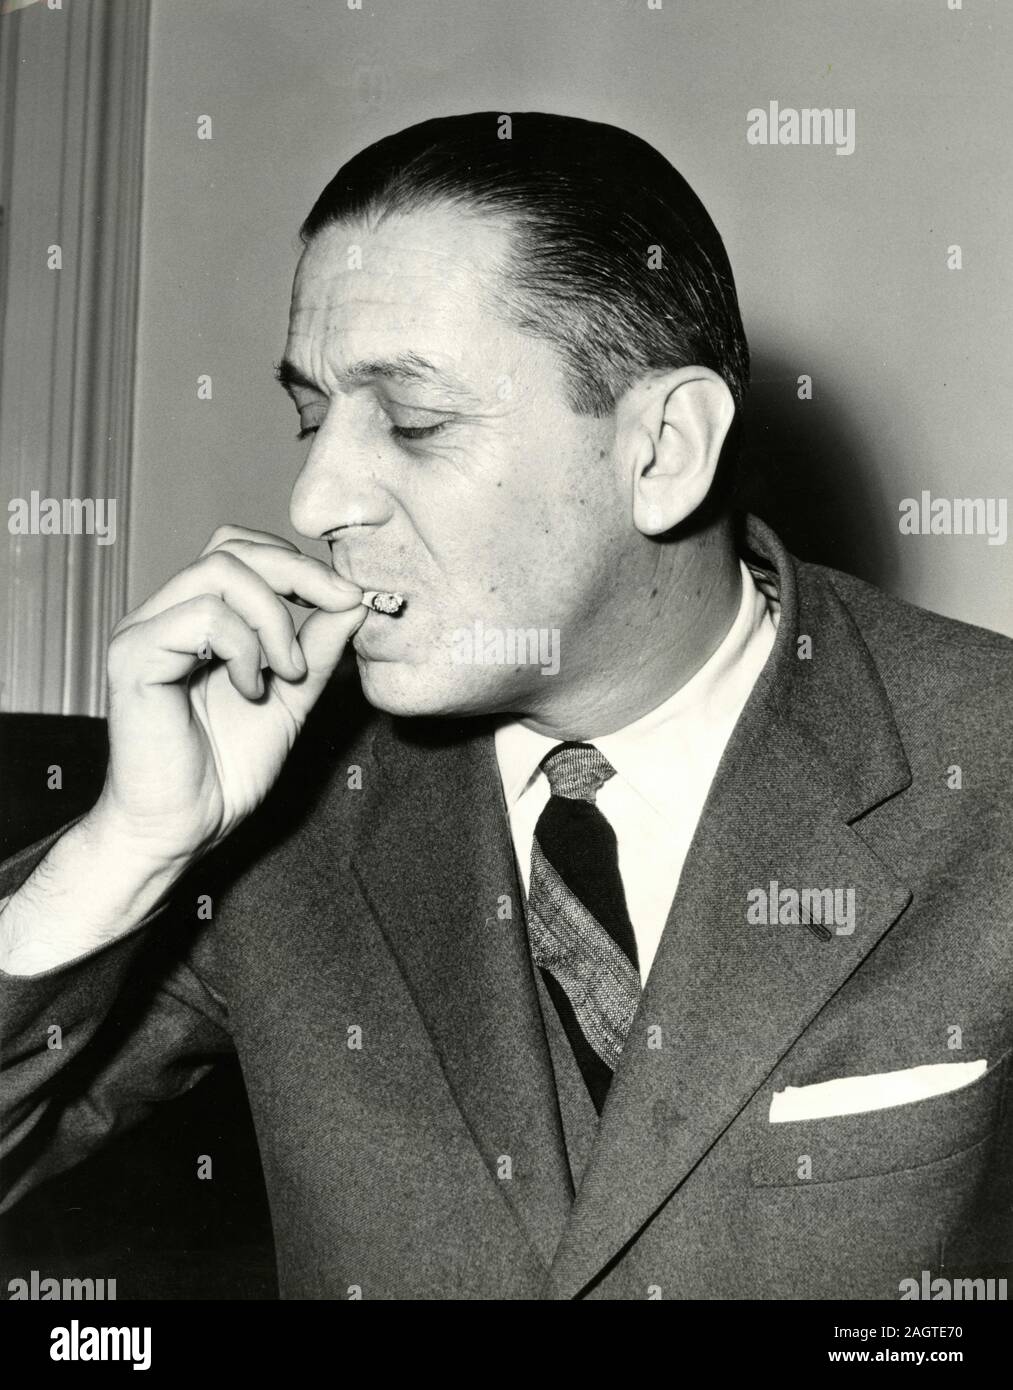 Homme politique italien Vittorio Badini Confalonieri de fumer la cigarette, Rome, Italie 1960 Banque D'Images